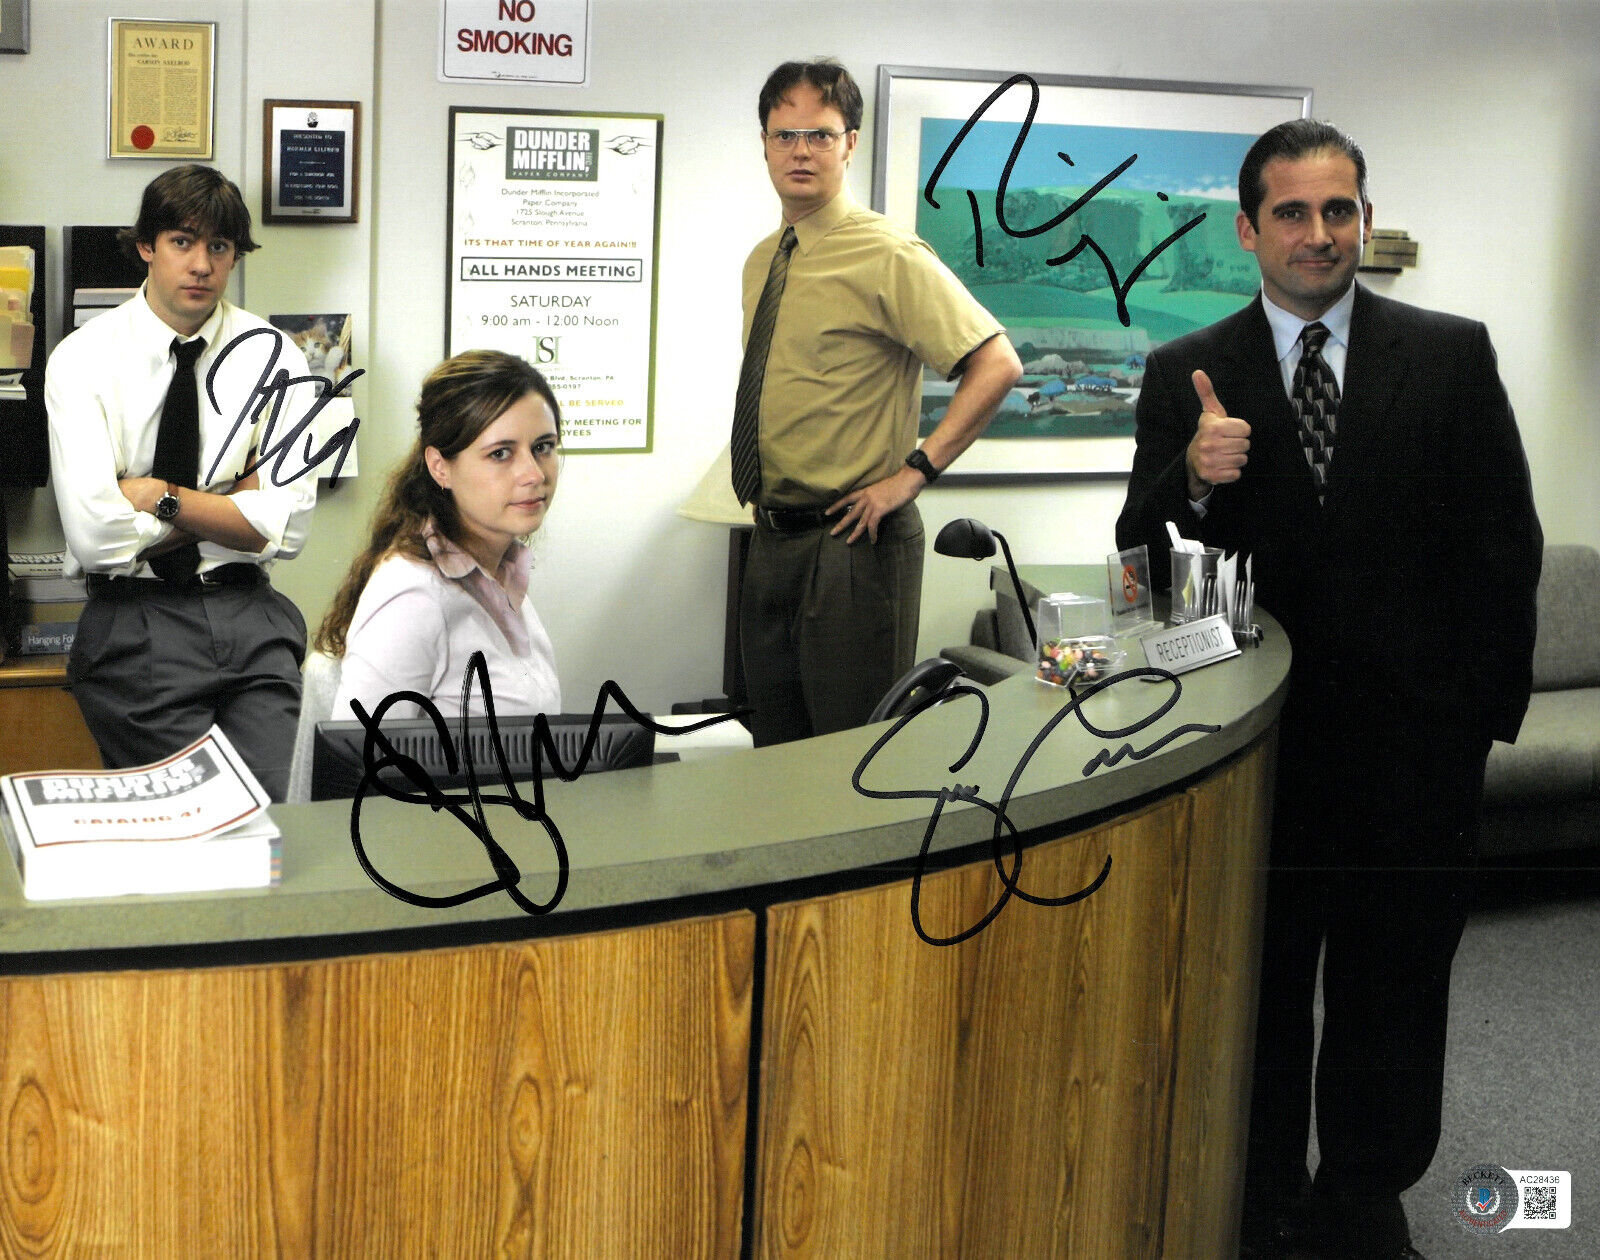 Steve Carell John Krasinski Rainn Wilson Signed Auto The Office 11x14 Photo BAS